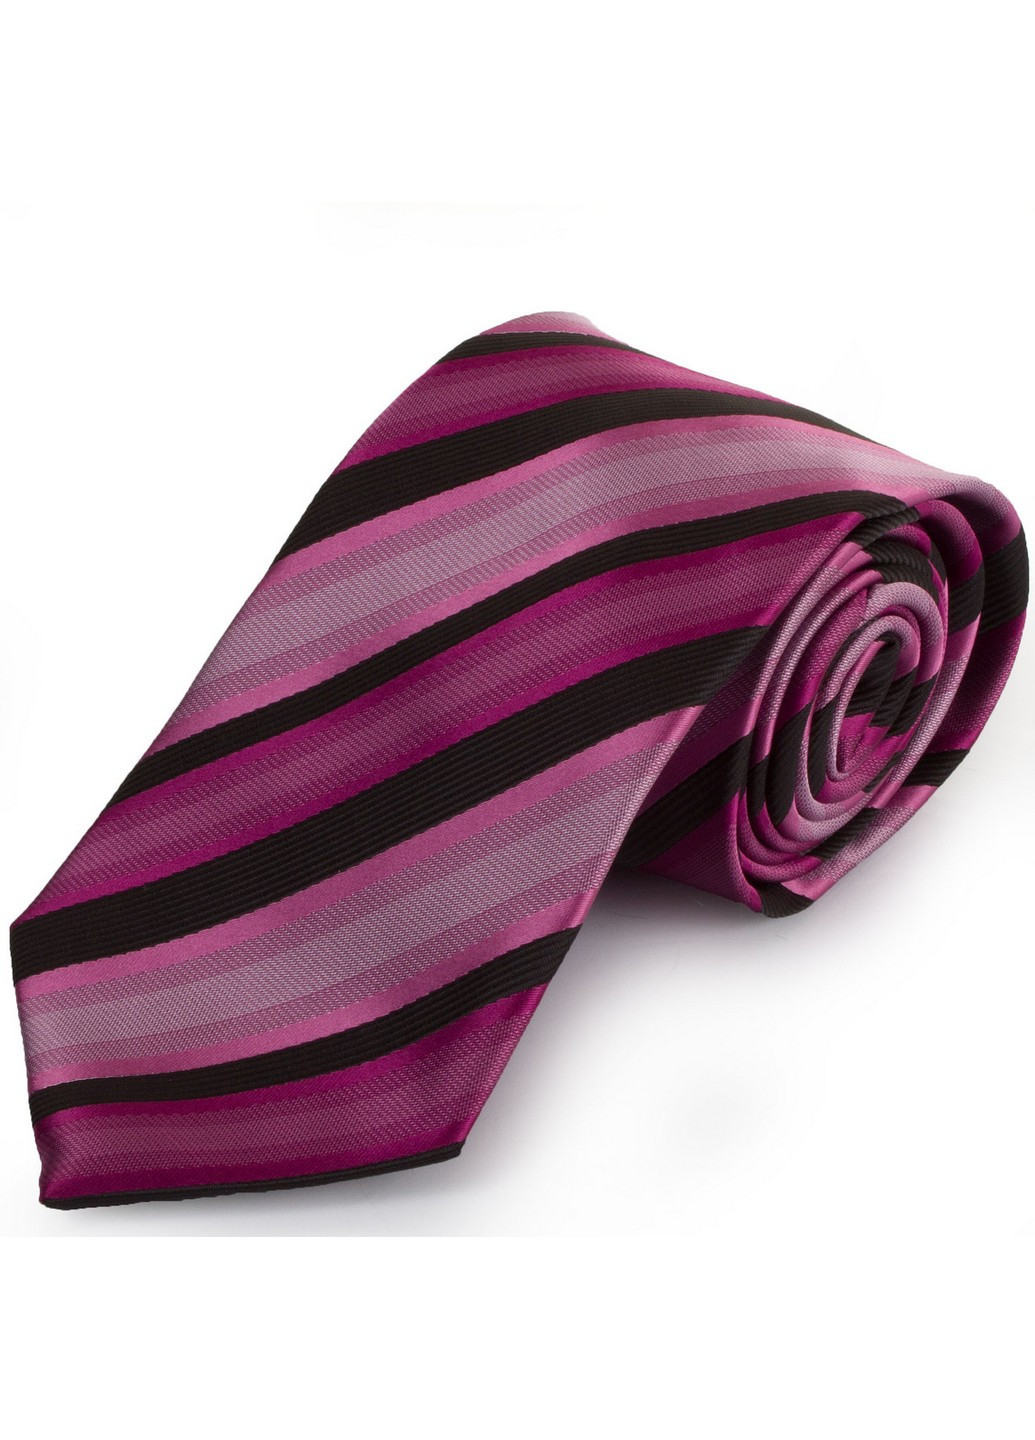 Краватка чоловіча 147 см Schonau & Houcken (206672921)